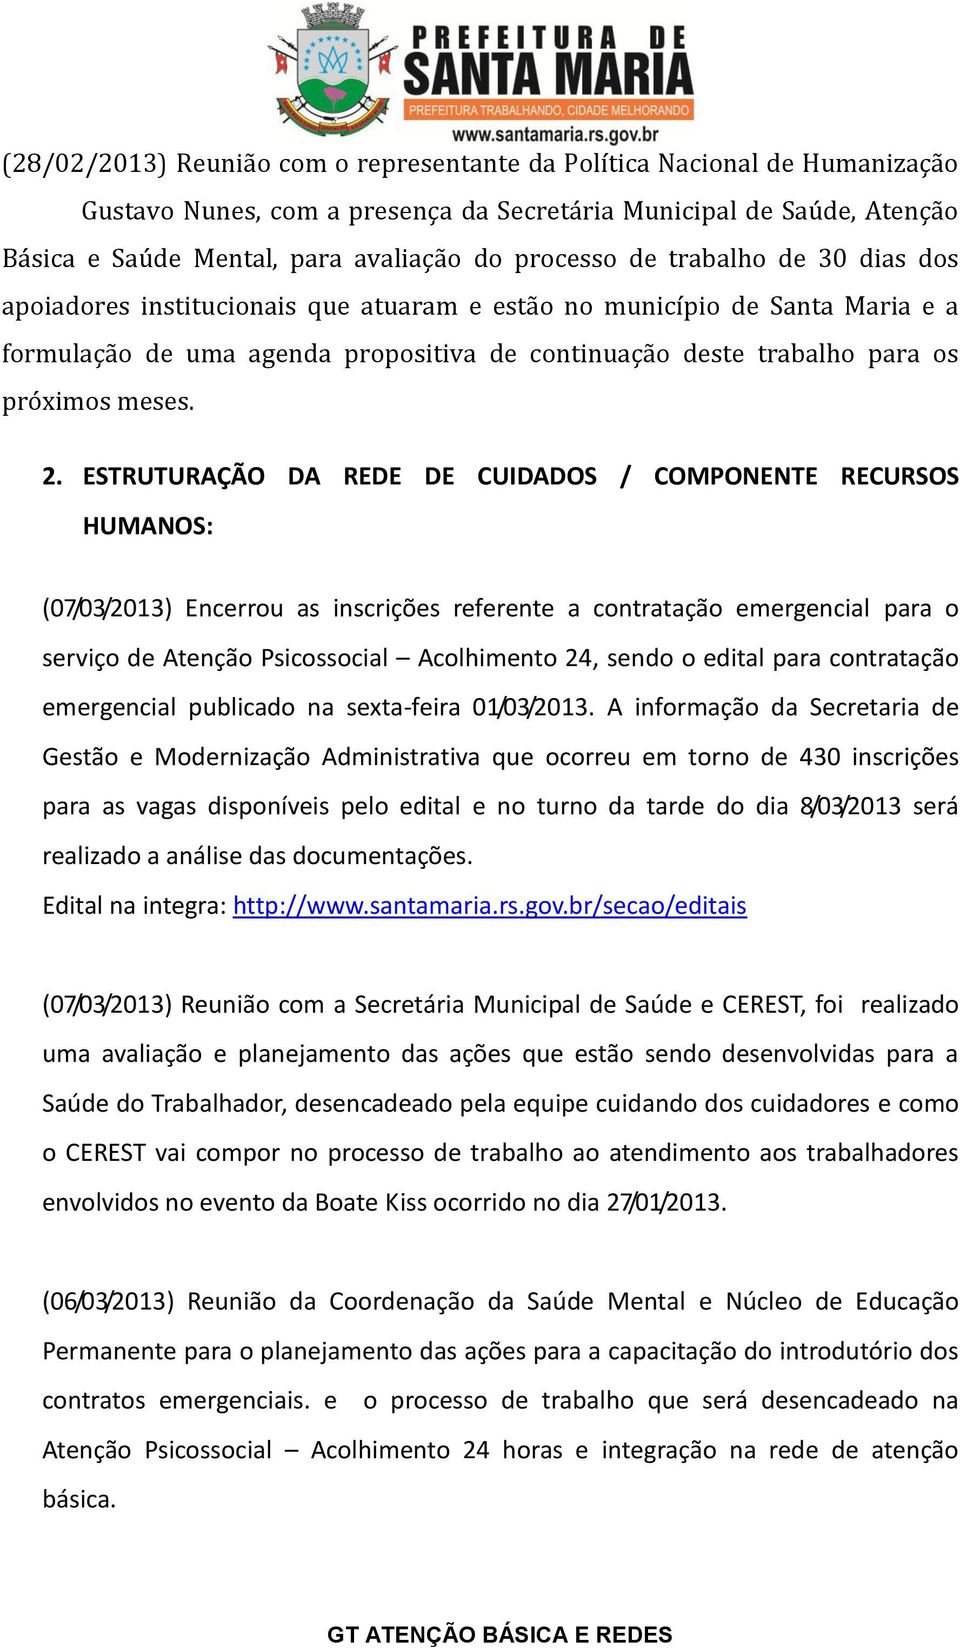 ESTRUTURAÇÃO DA REDE DE CUIDADOS / COMPONENTE RECURSOS HUMANOS: (07/03/2013) Encerrou as inscrições referente a contratação emergencial para o serviço de Atenção Psicossocial Acolhimento 24, sendo o